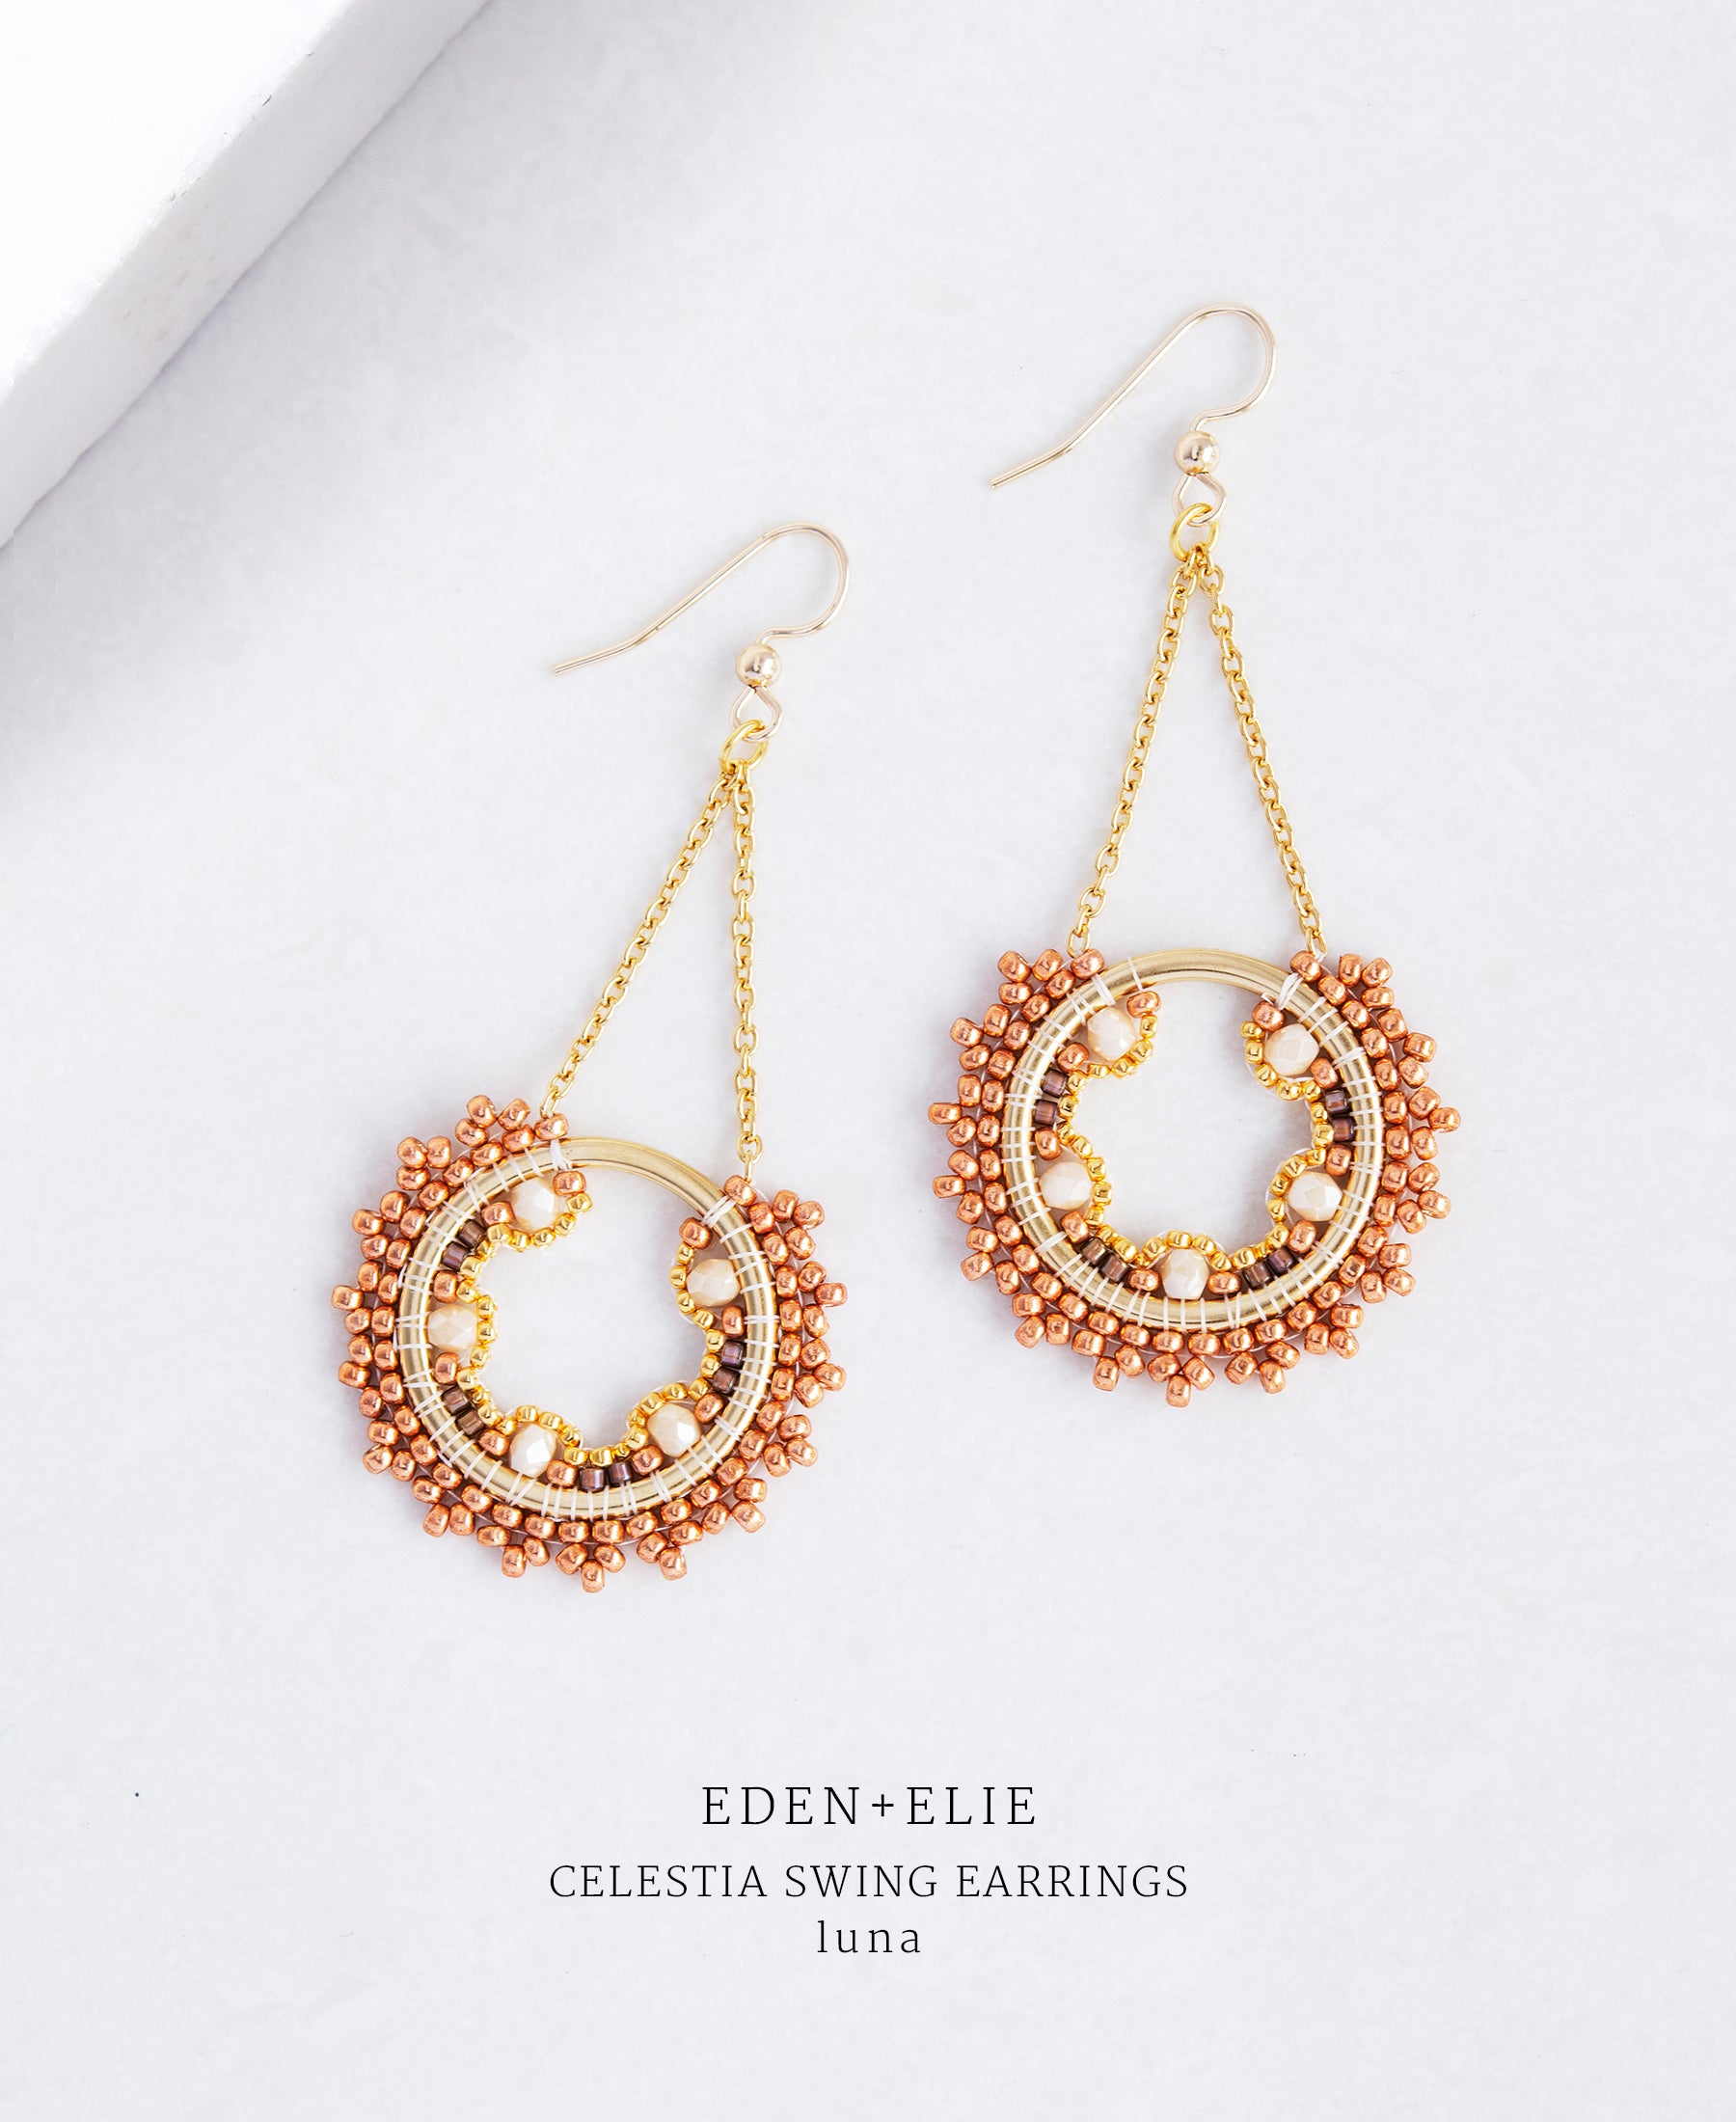 EDEN + ELIE Celestia swing earrings - luna ivory